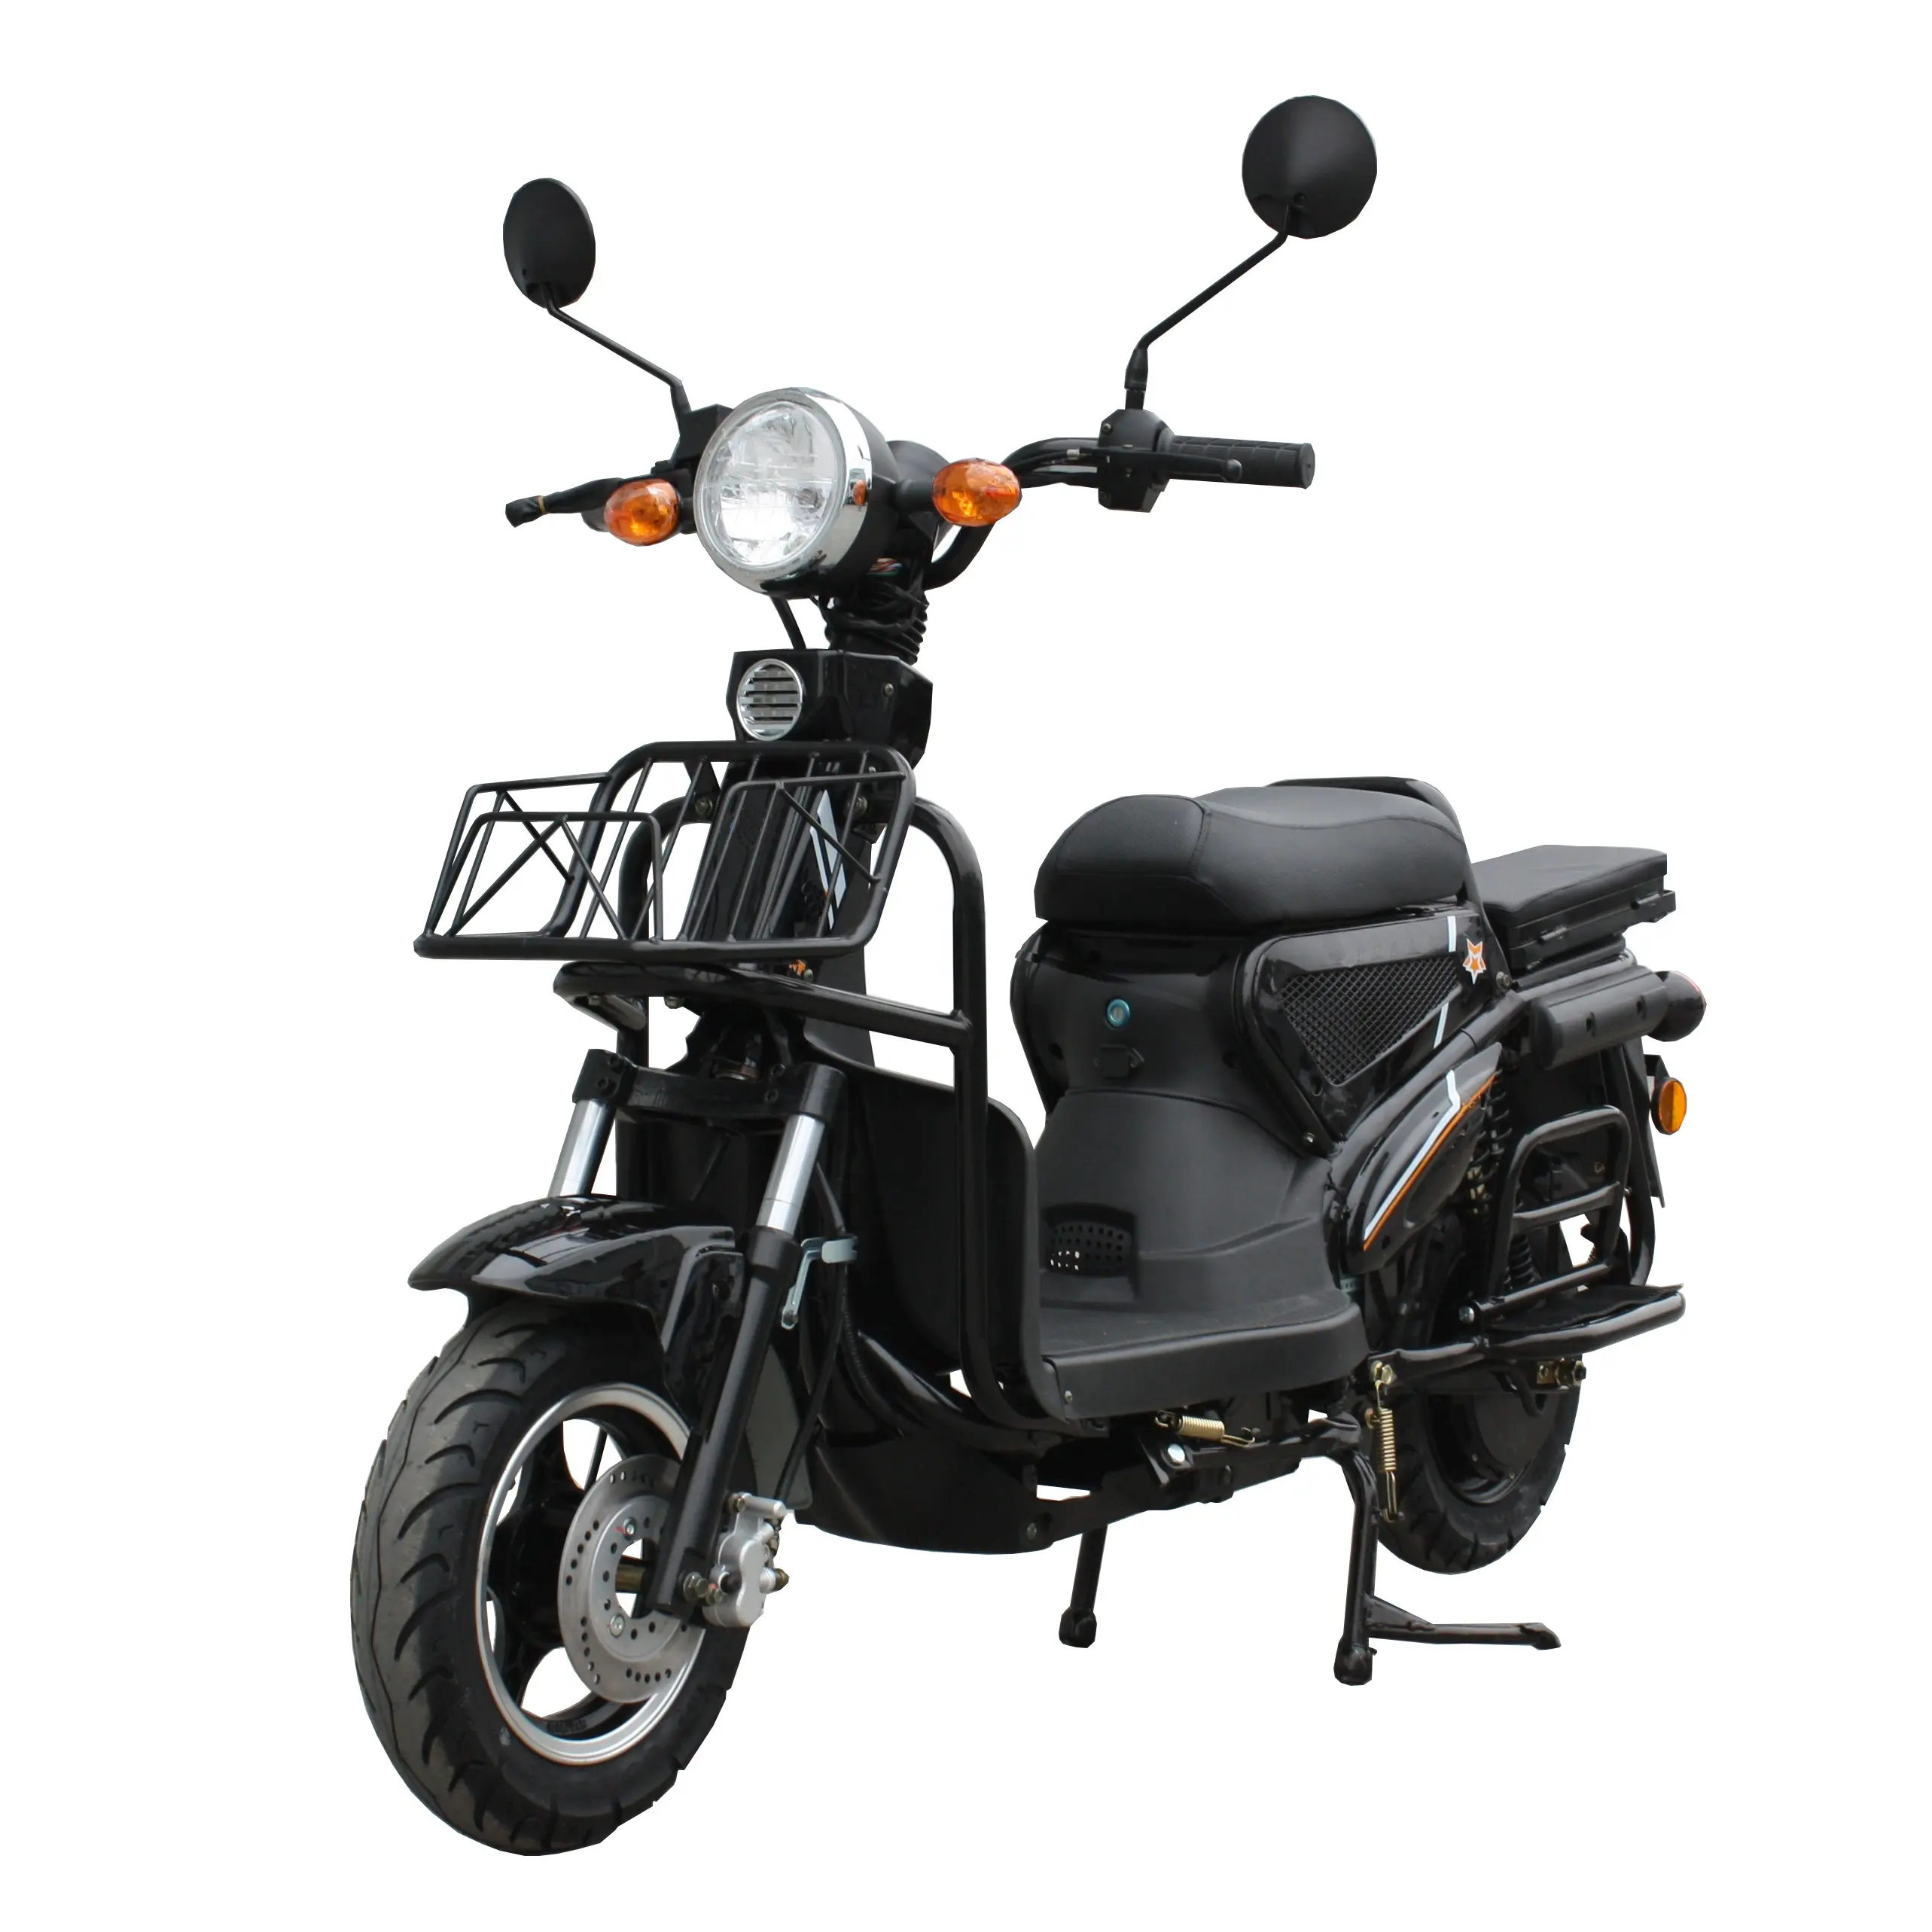 Approuvé cee pour scooter électrique, pneus 3.00-10, puissance du moteur 1200W